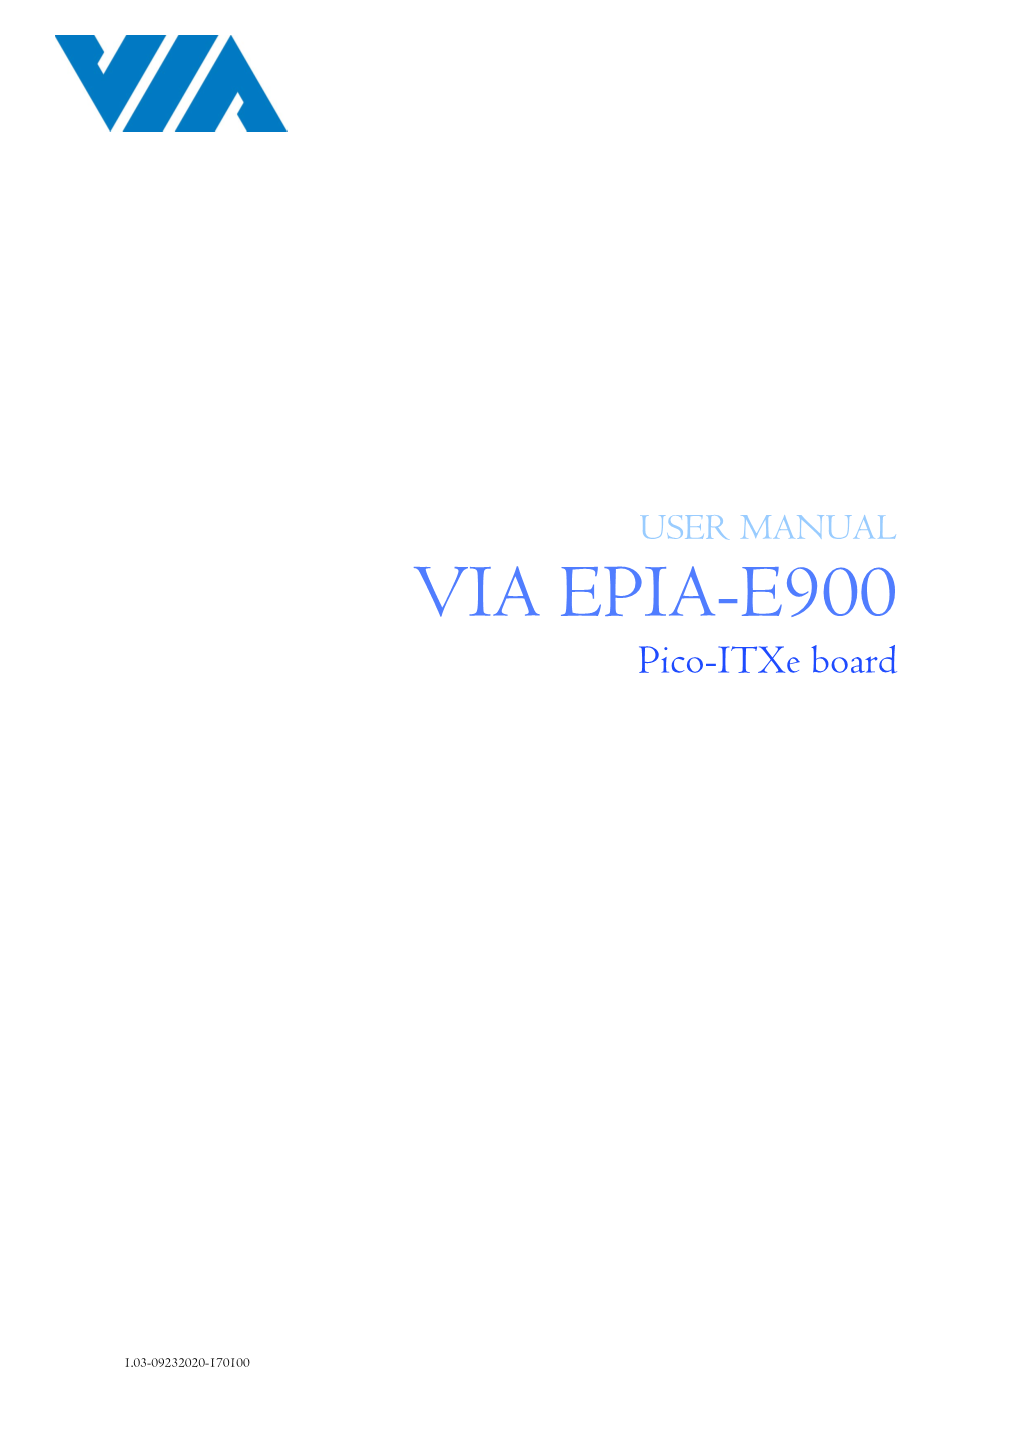 VIA EPIA-E900 Pico-Itxe Board